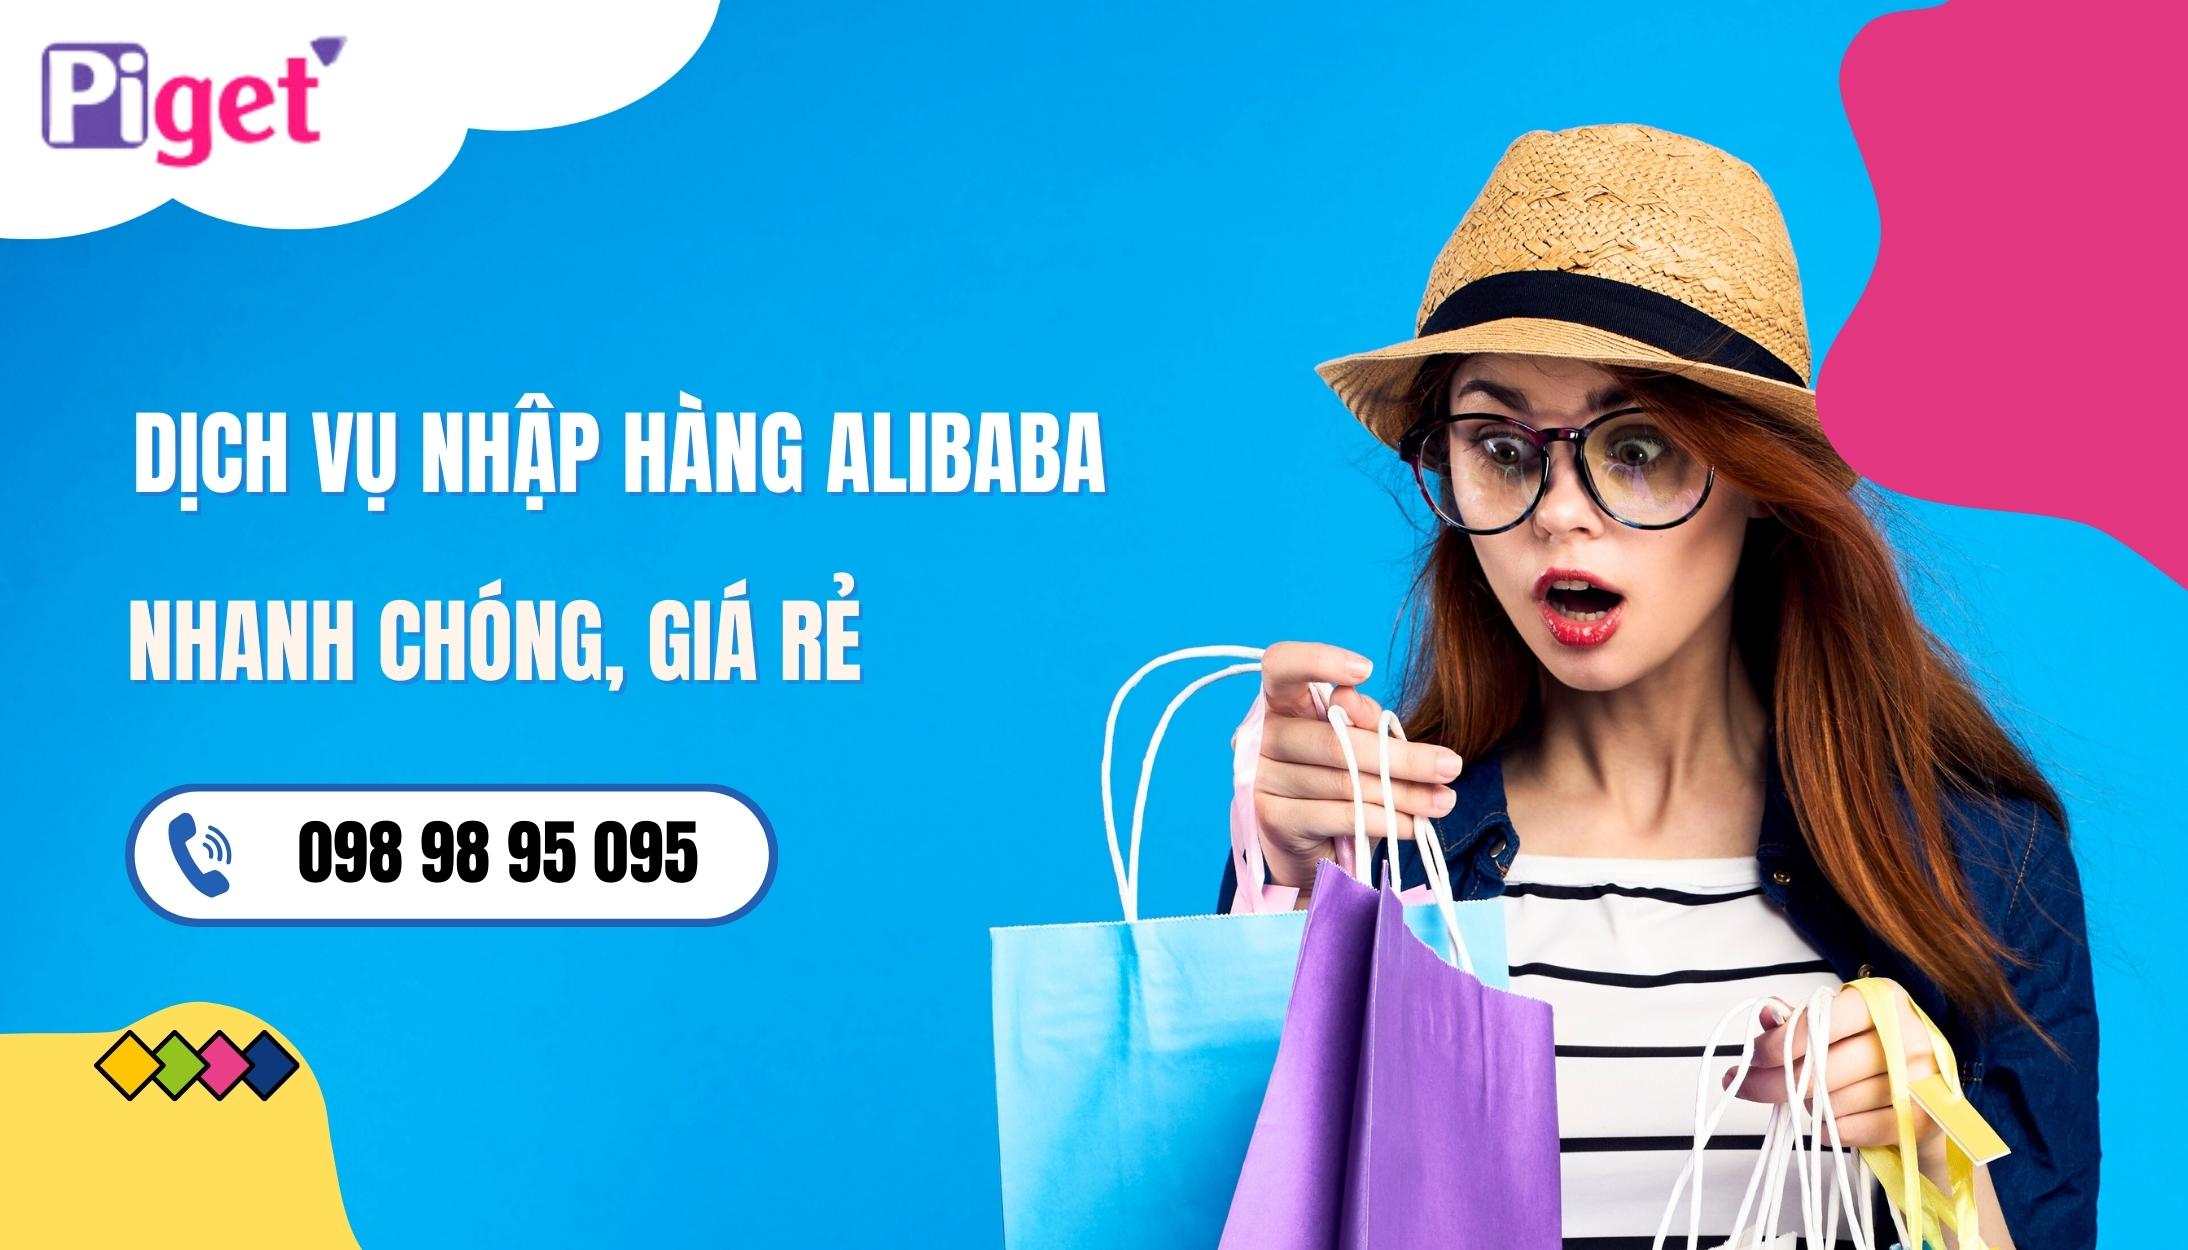 Order Alibaba giá rẻ tại Piget